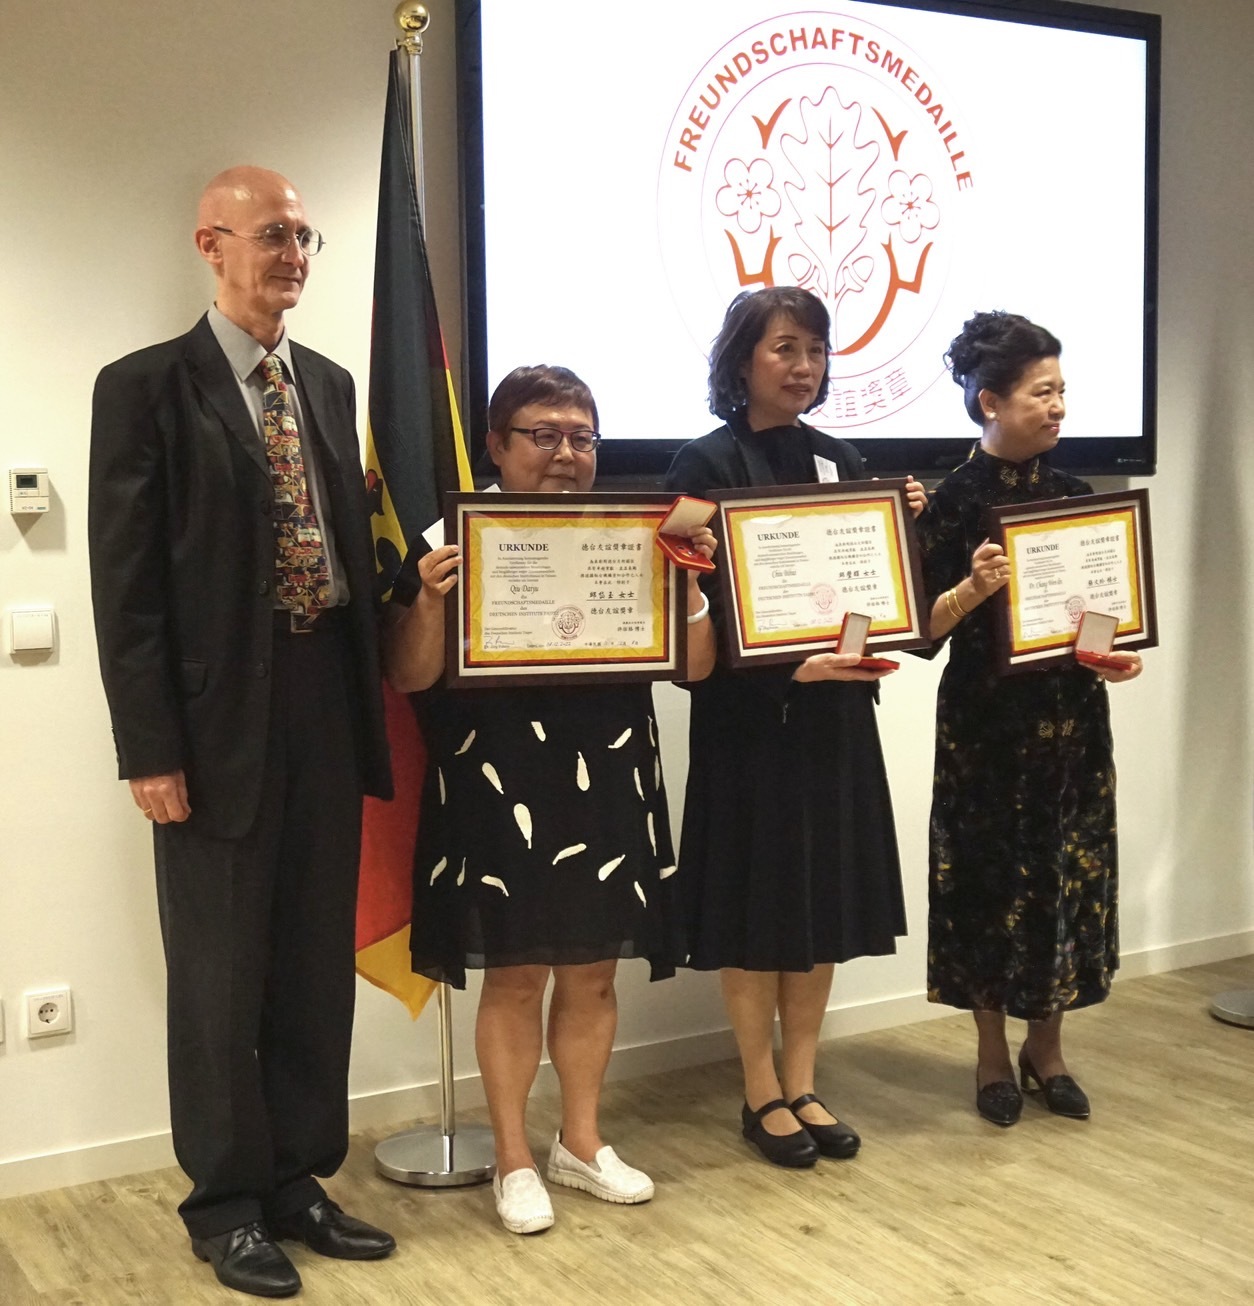 德國在台協會頒贈友誼獎章 央廣德語召集人邱璧輝獲獎